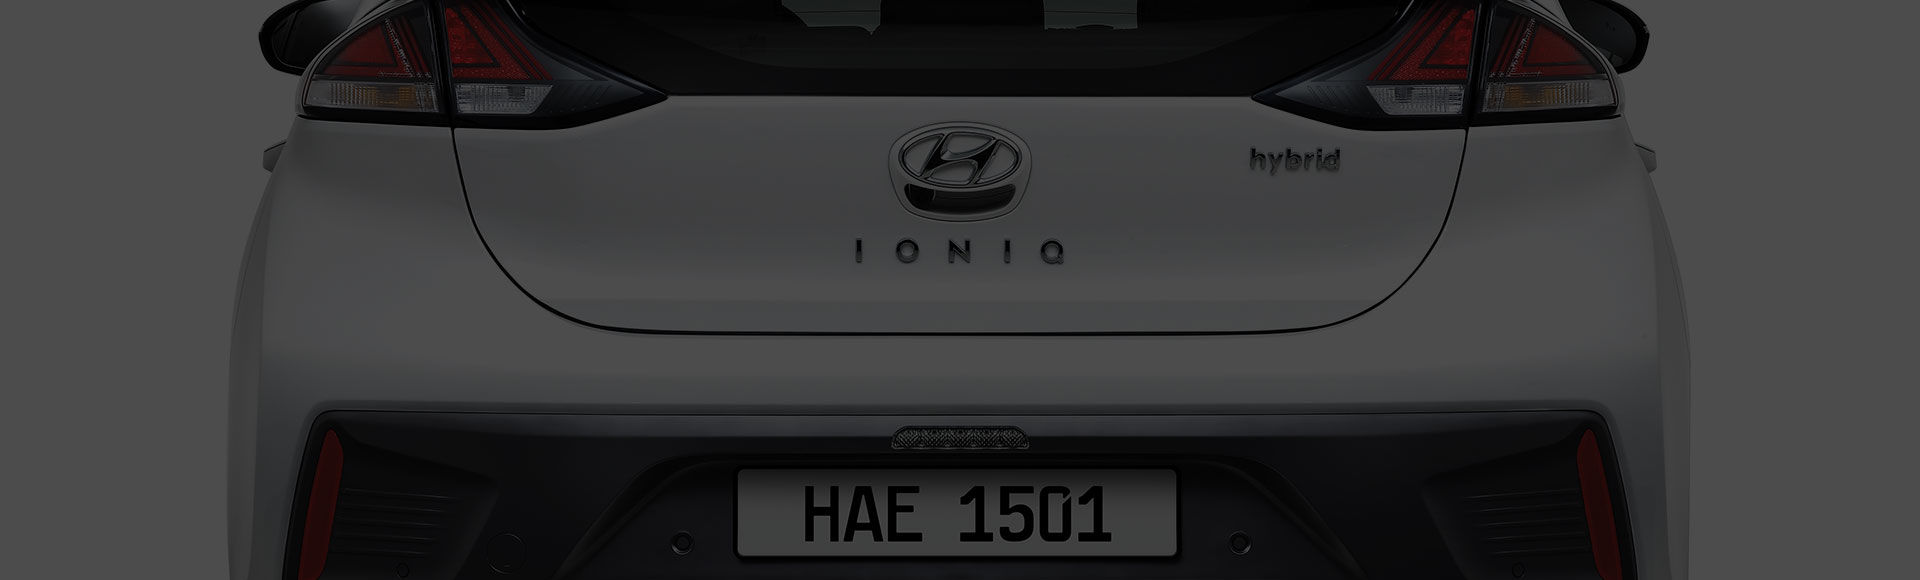 IONIQ hybrid exterior rear design